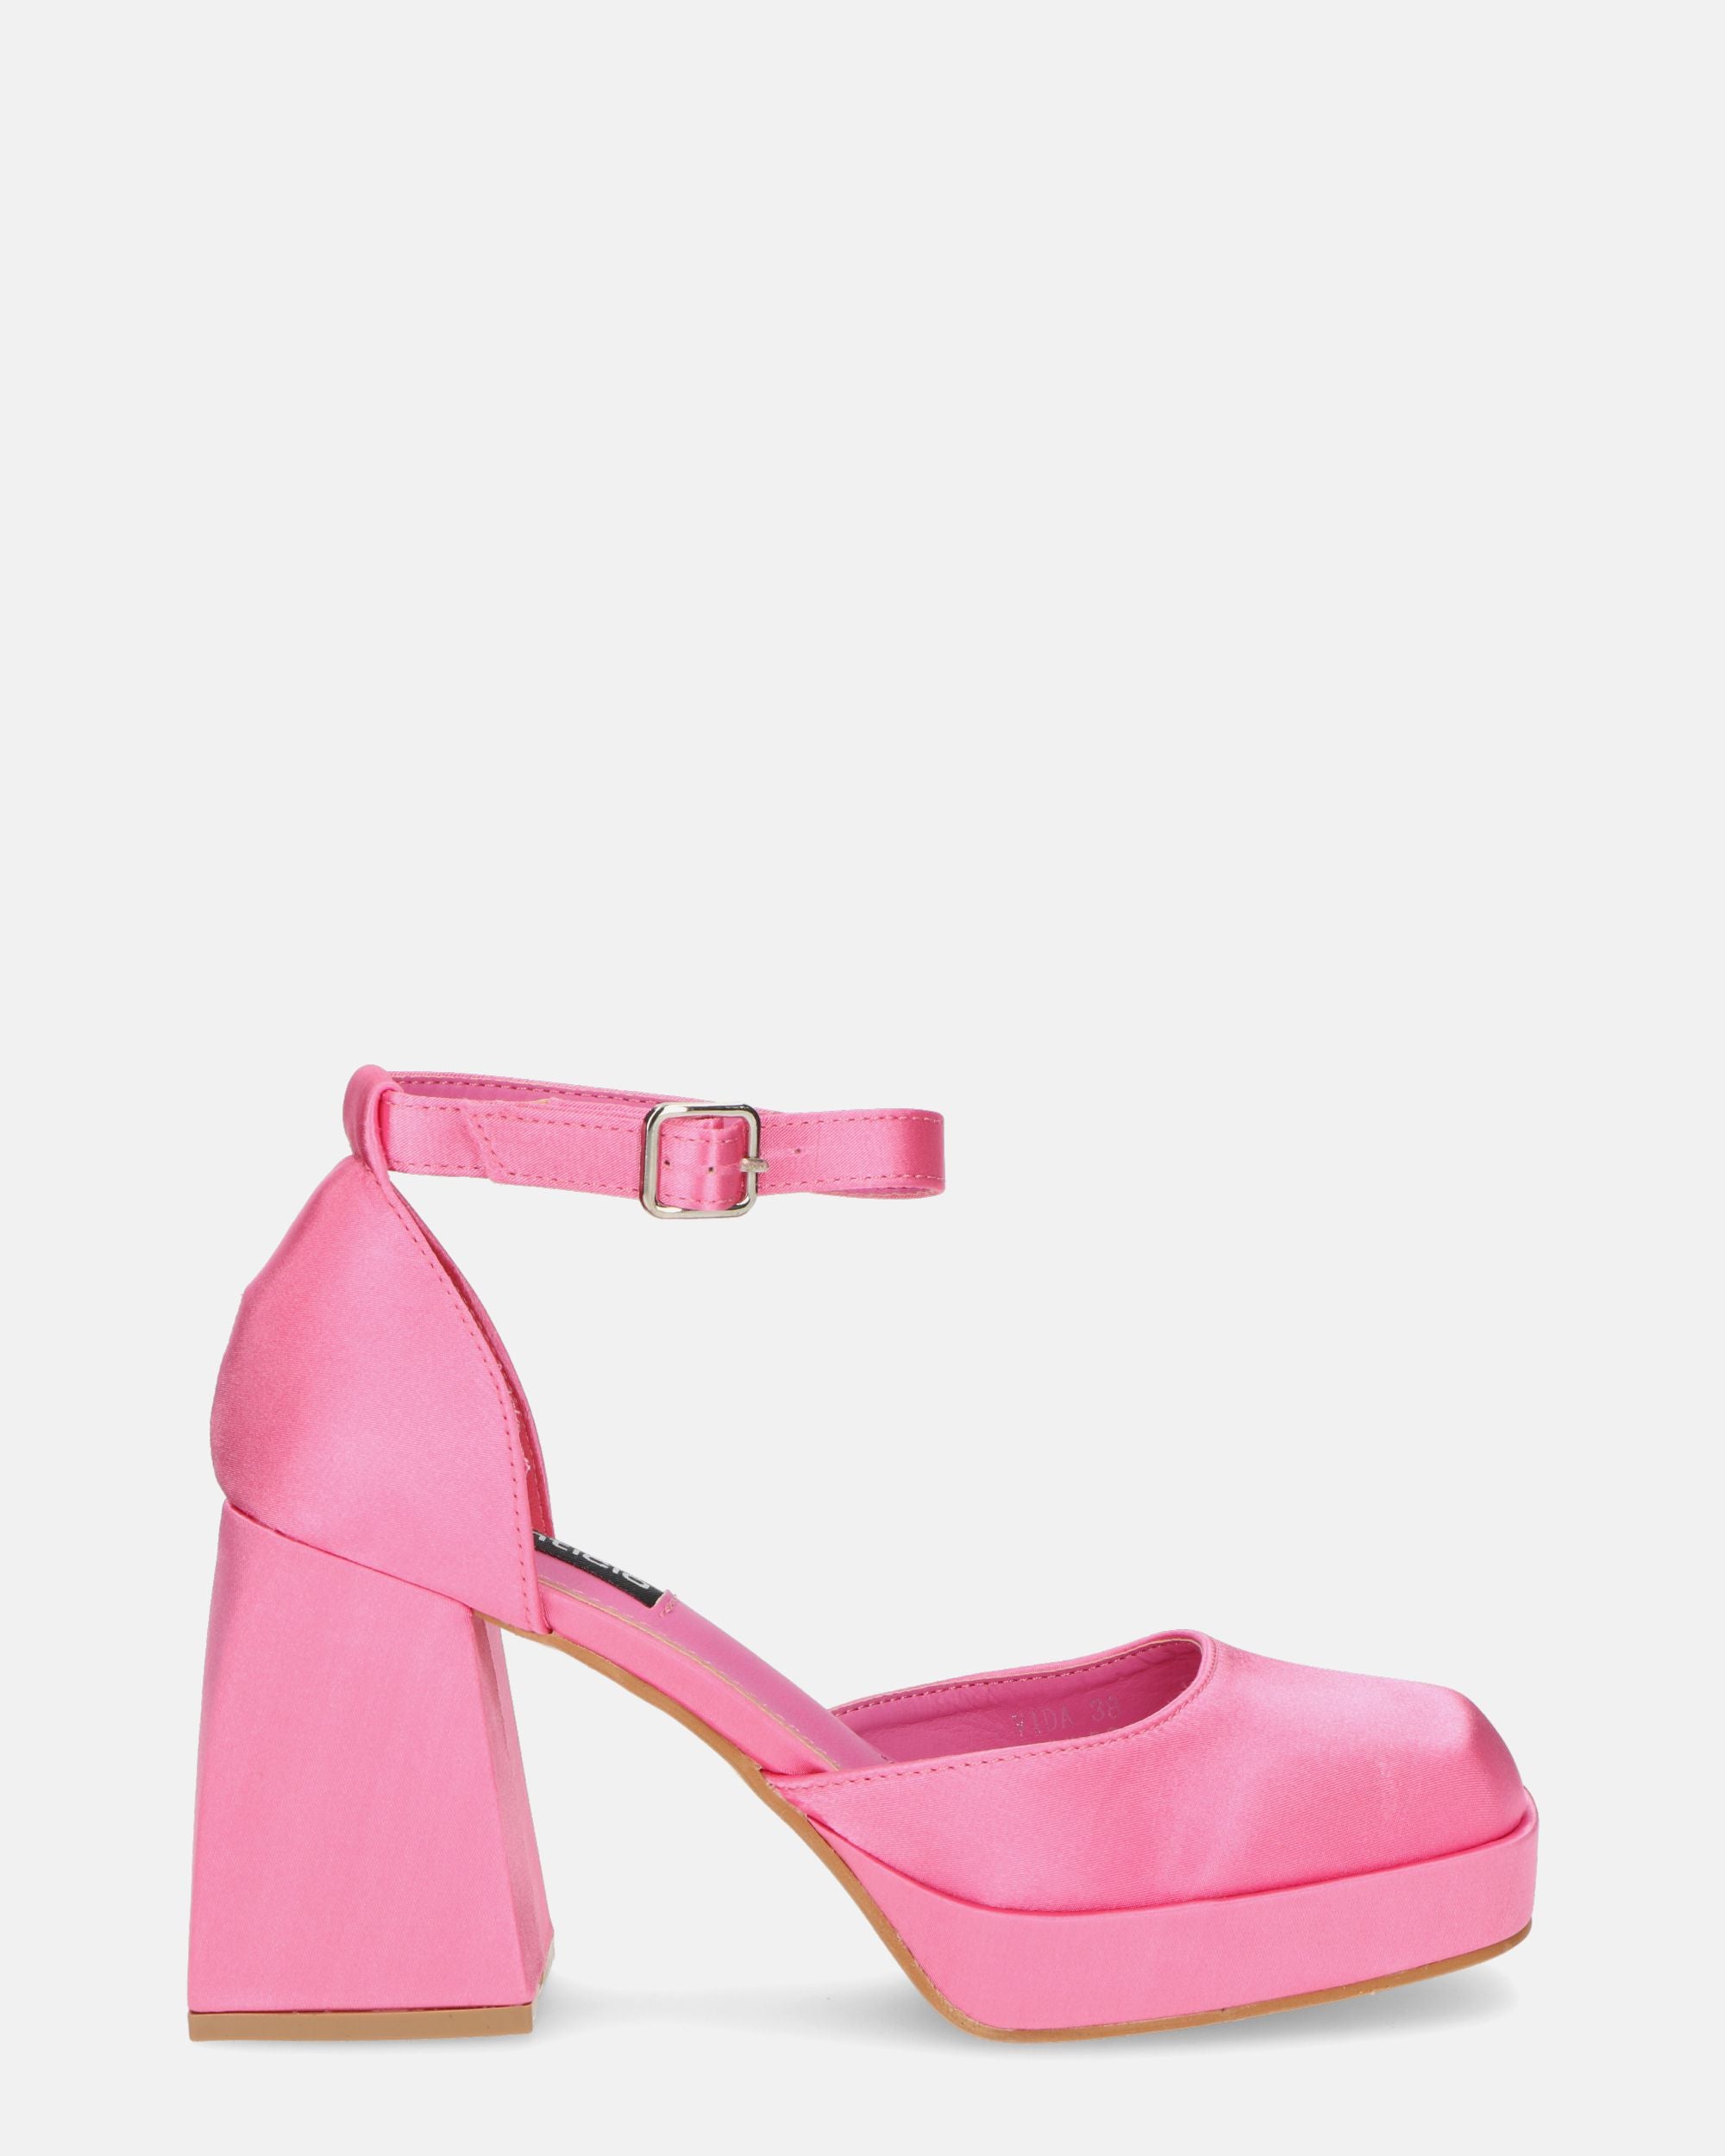 VIDA - scarpe con tacco squadrato in satin rosa